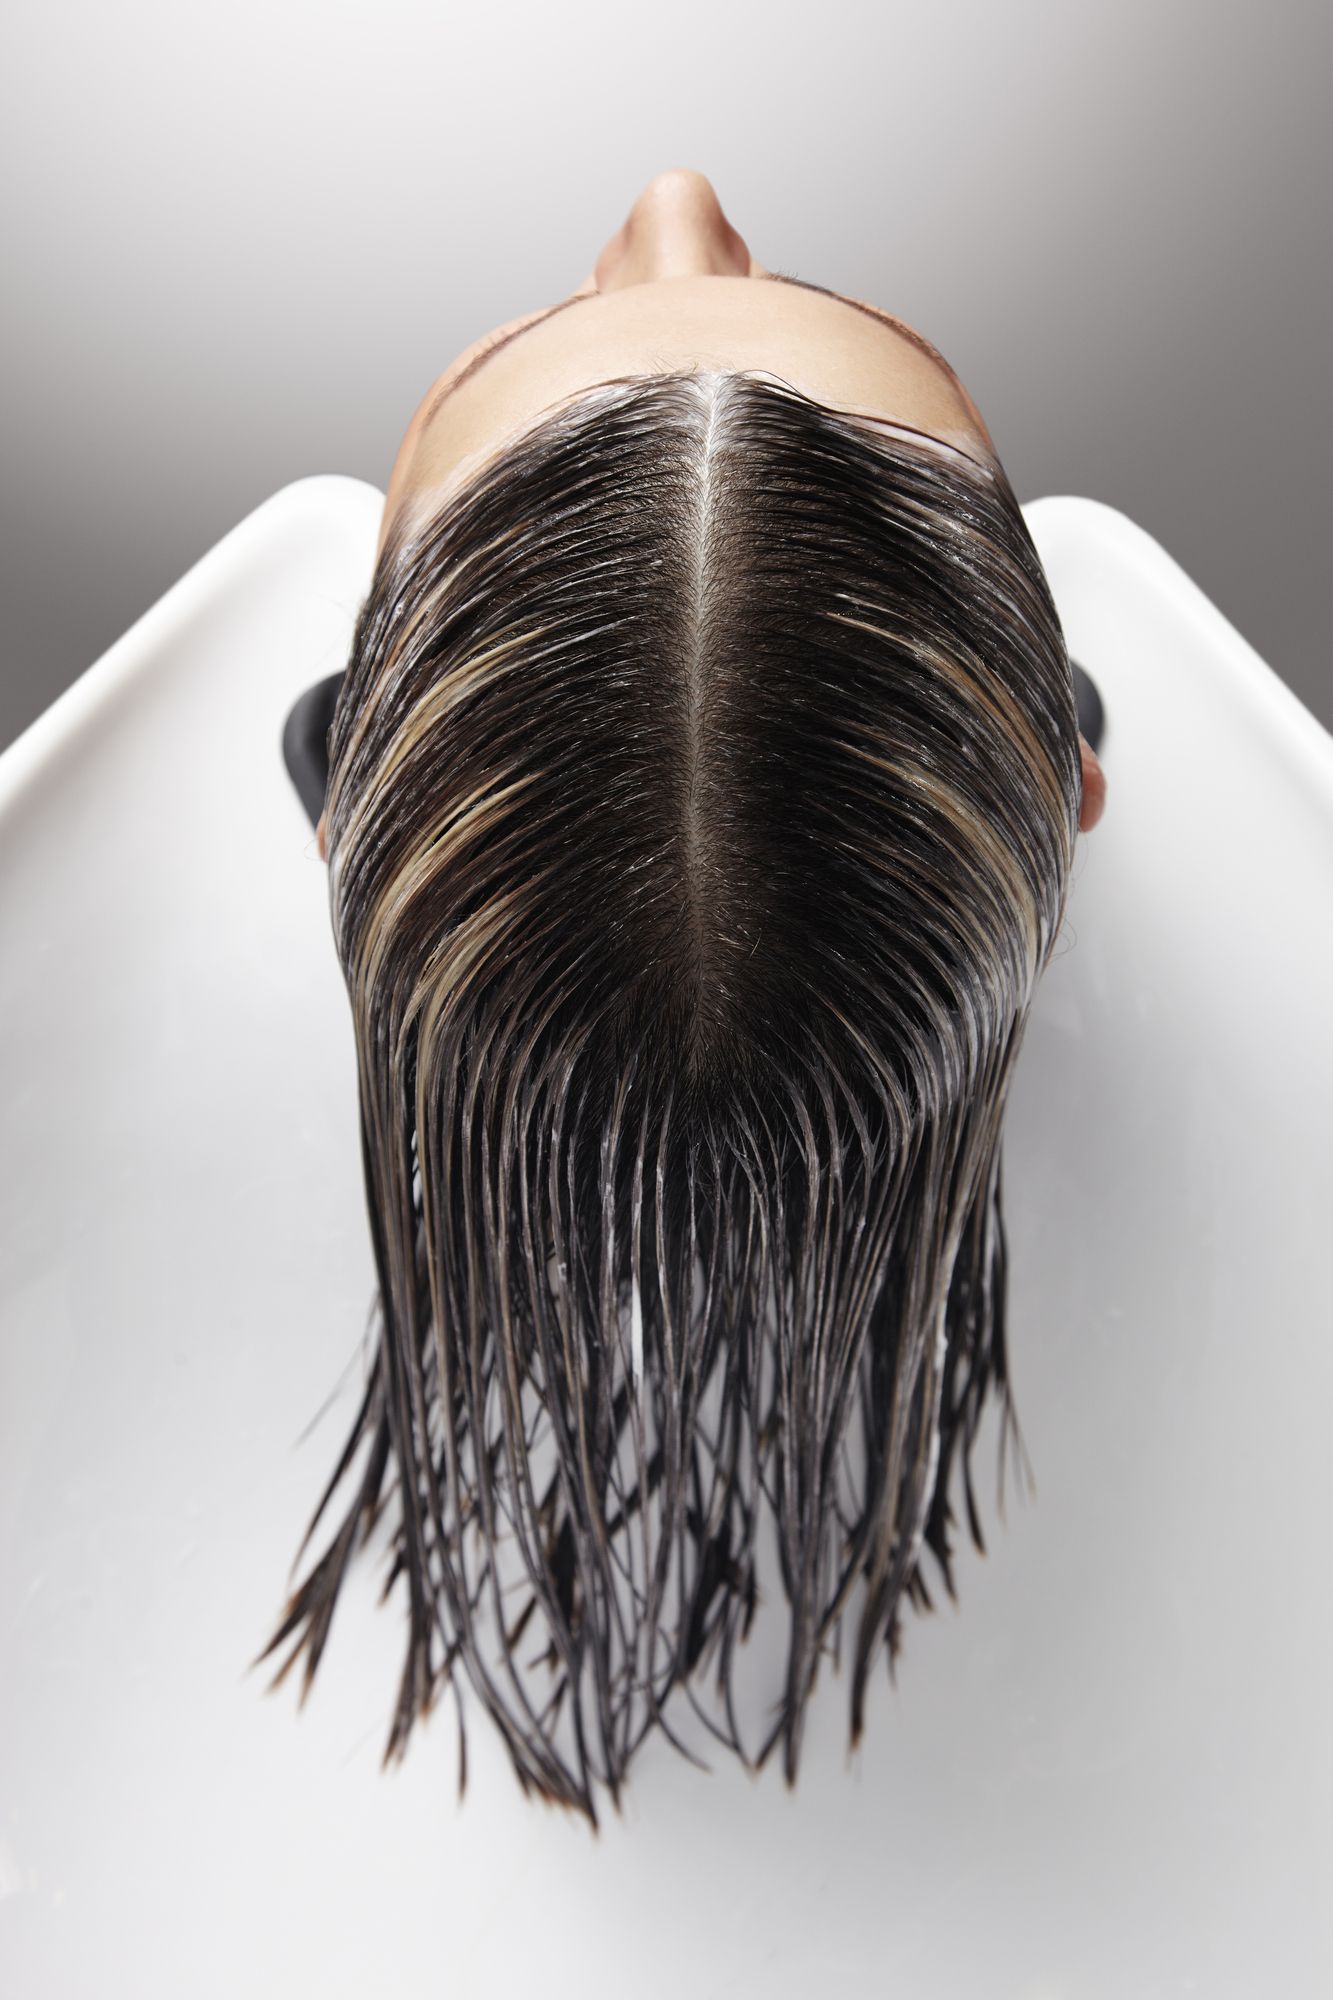 ⁨‎⁨استخدام زيت الخروع لزيادة نمو الشعر⁩⁩